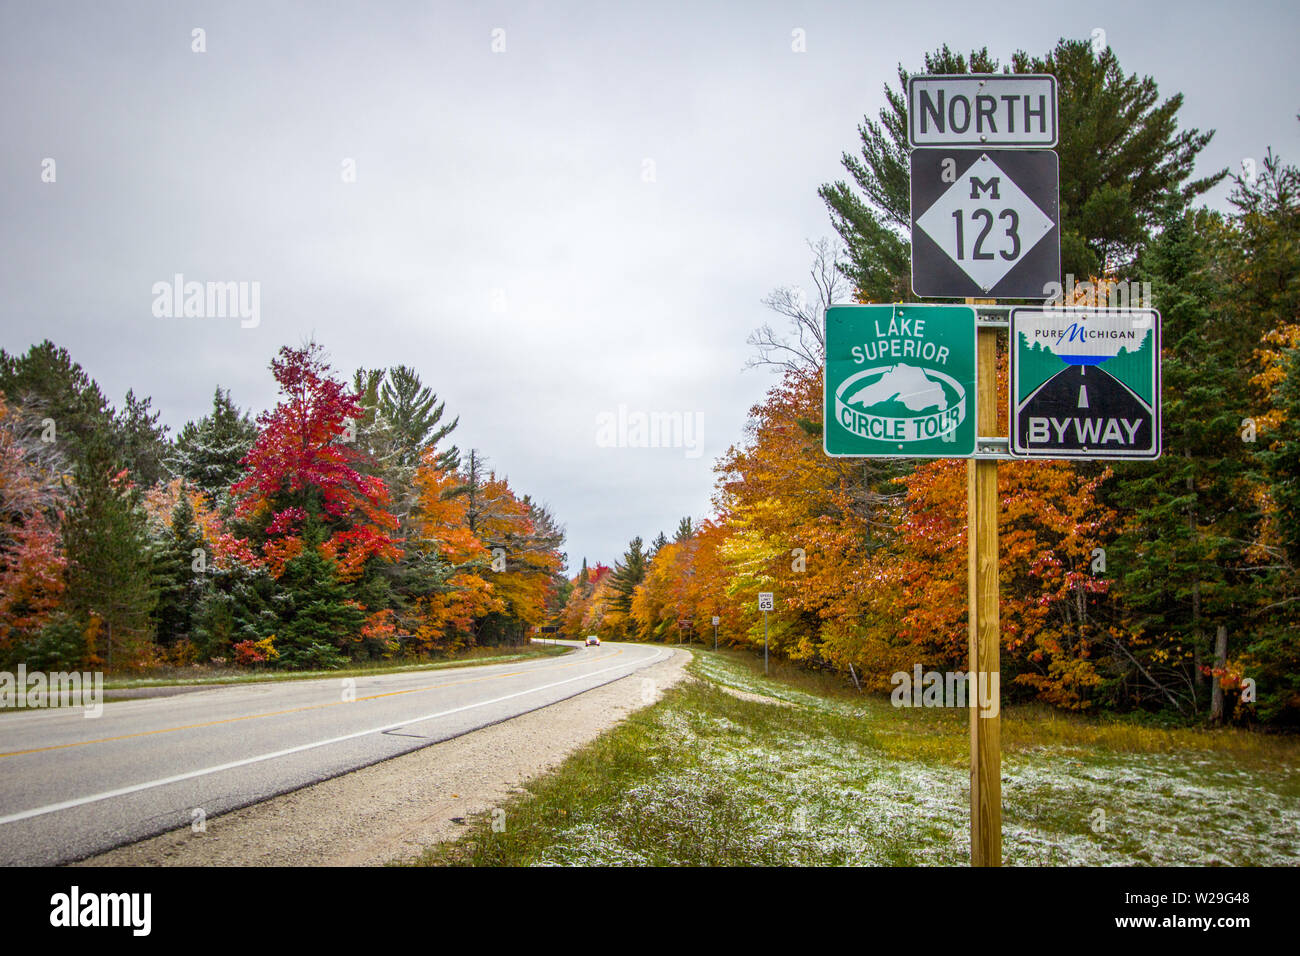 Paradies, Michigan, USA - Oktober 13, 2018: Michigan Scenic Byway mit Lake Superior Scenic Circle Tour auf einem ländlichen Michigan zweispurigen Autobahn. Stockfoto